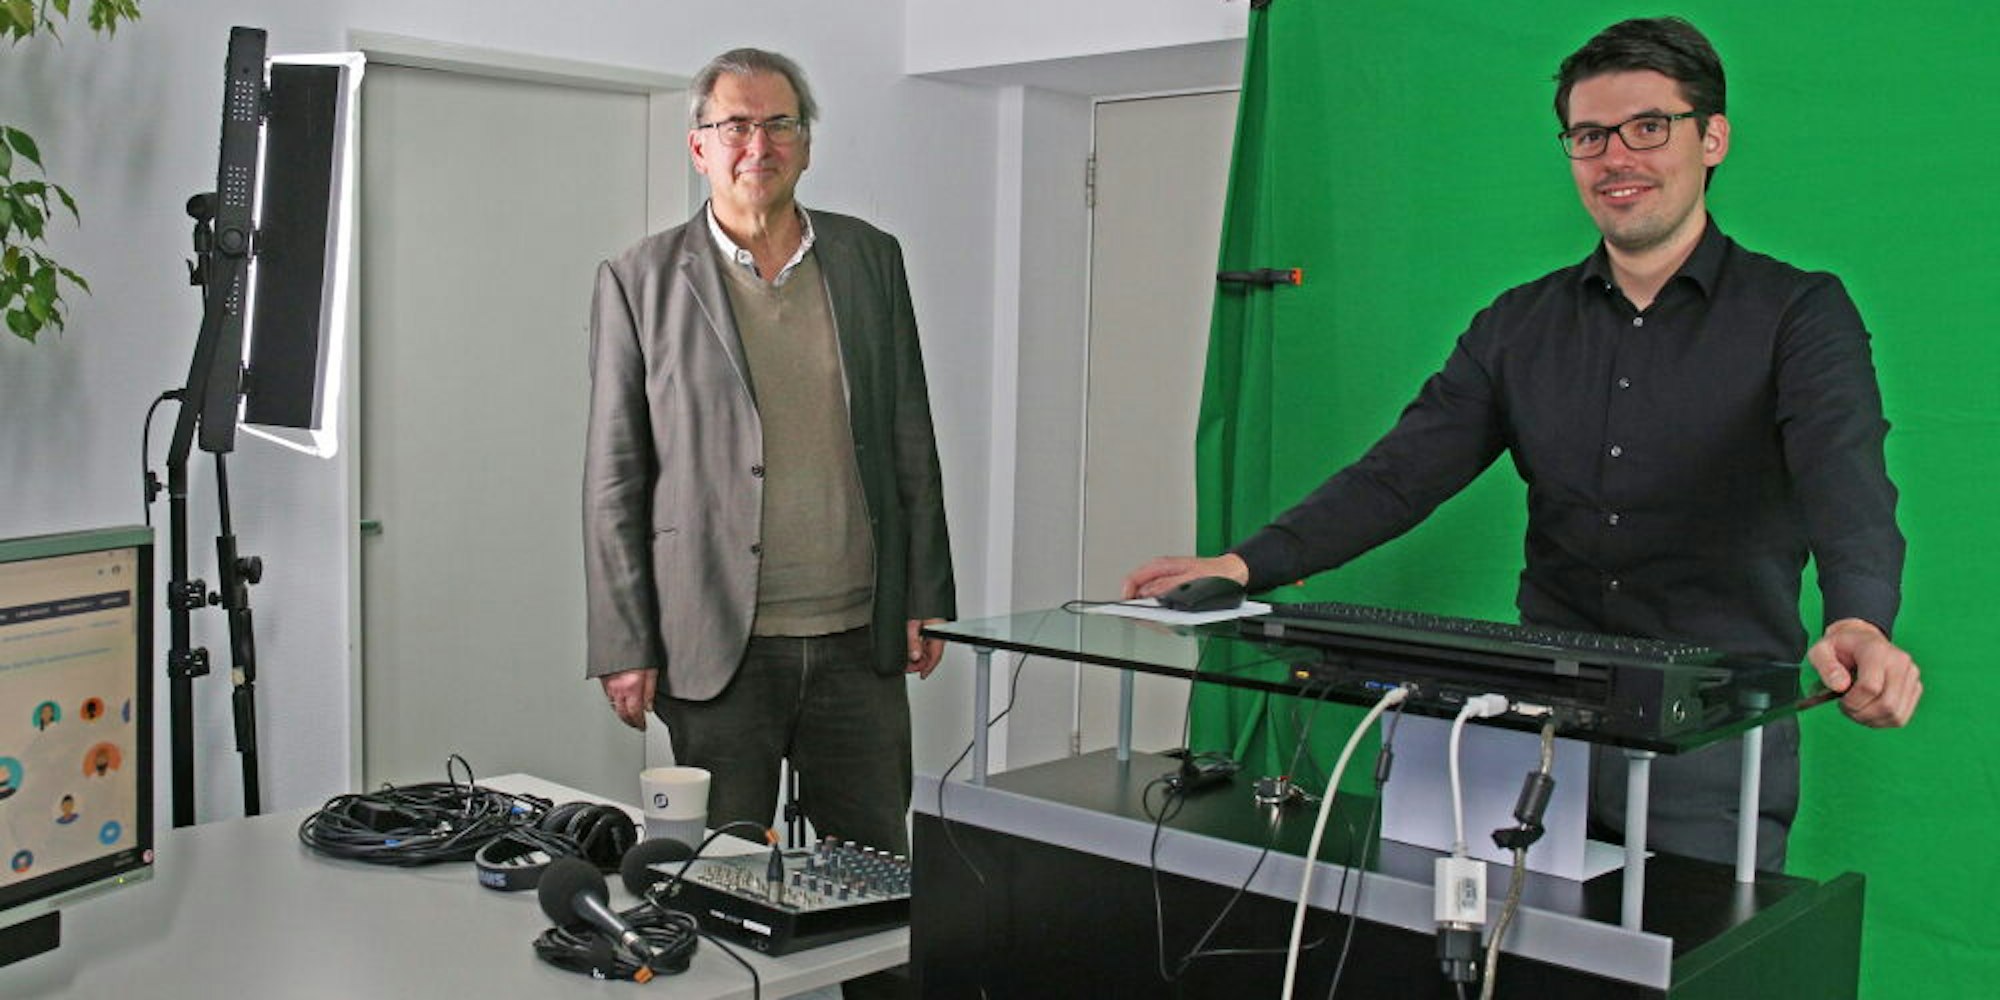 Akademie-Leiter Klaus Füßmann (l.) mit Referent Martin Thoma im Internetstudio der Akademie.